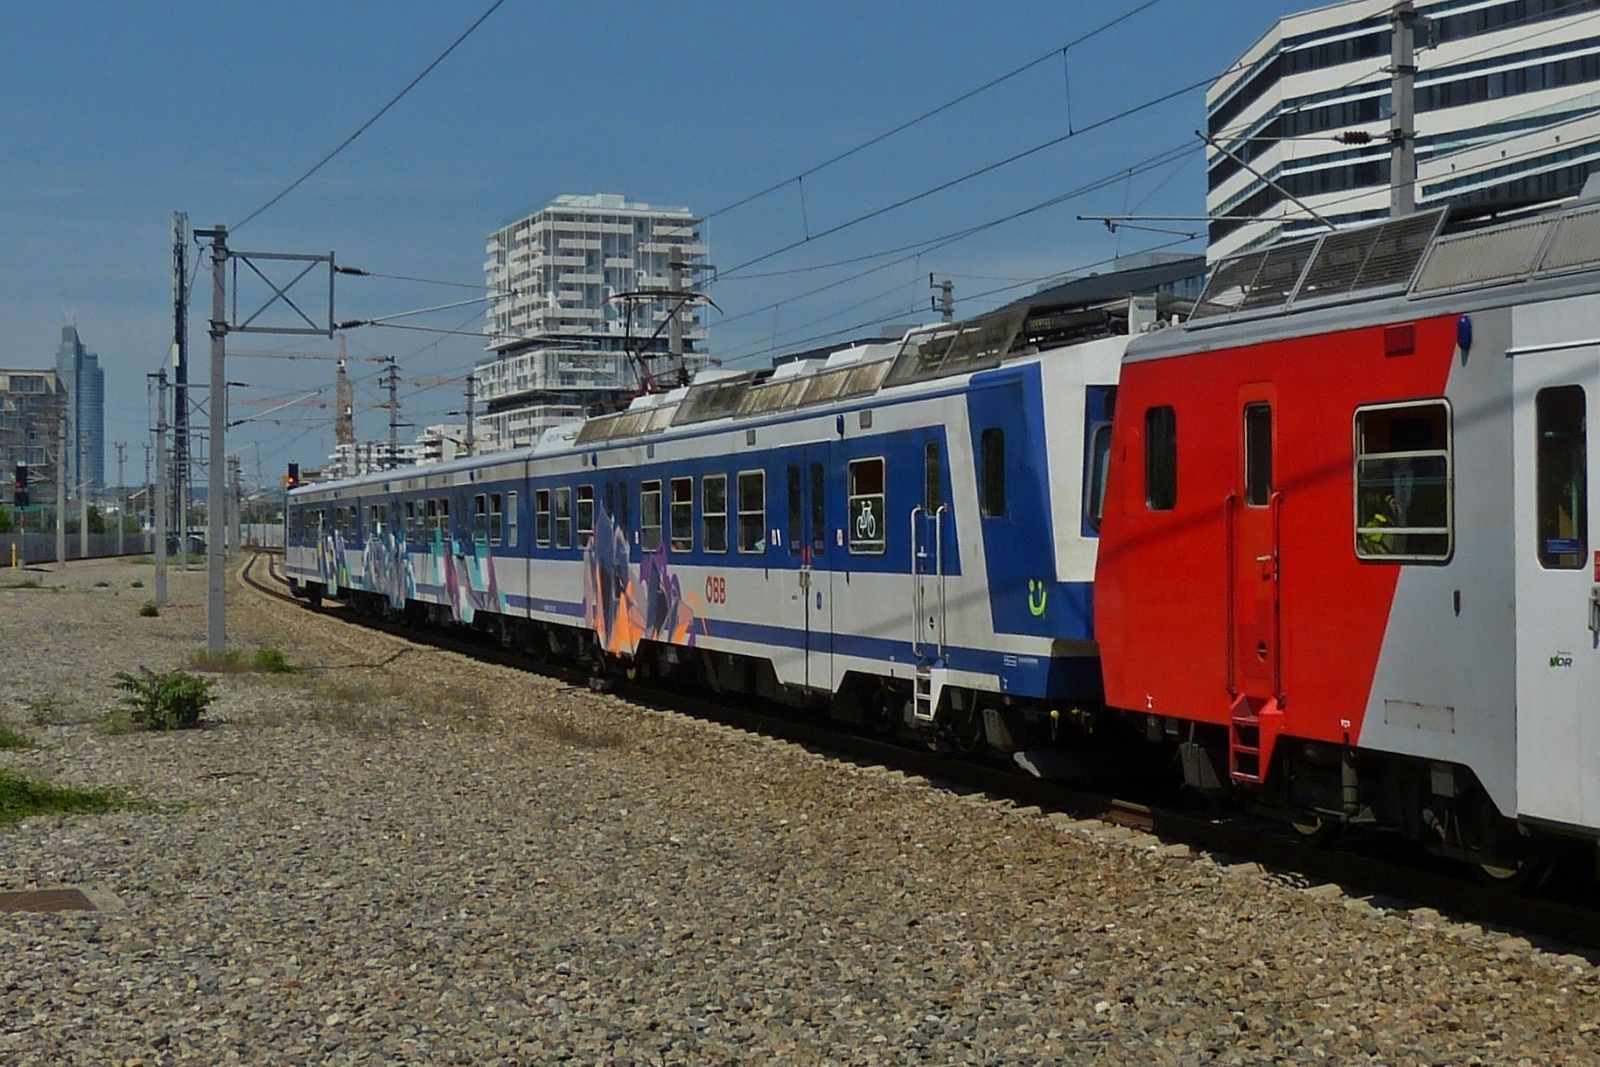 Triebzug 6020 305-6 am 6020 296-7 angehängt fährt als S-Bahn in den Bahnhof Wien Praterstern ein. 01.06.2023